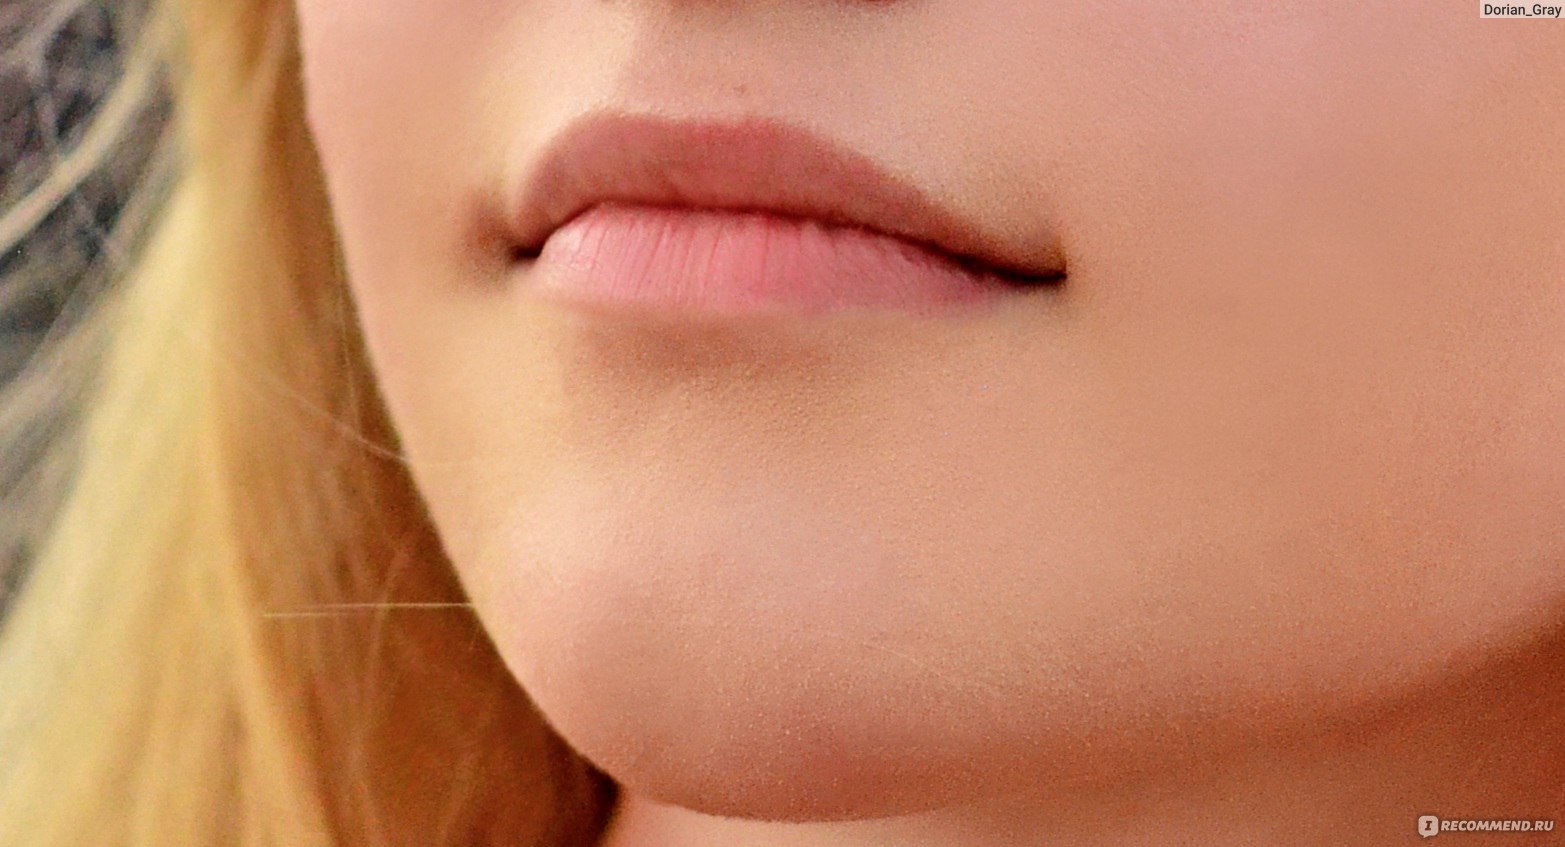 Как сделать губы красными без помады: секреты красоты